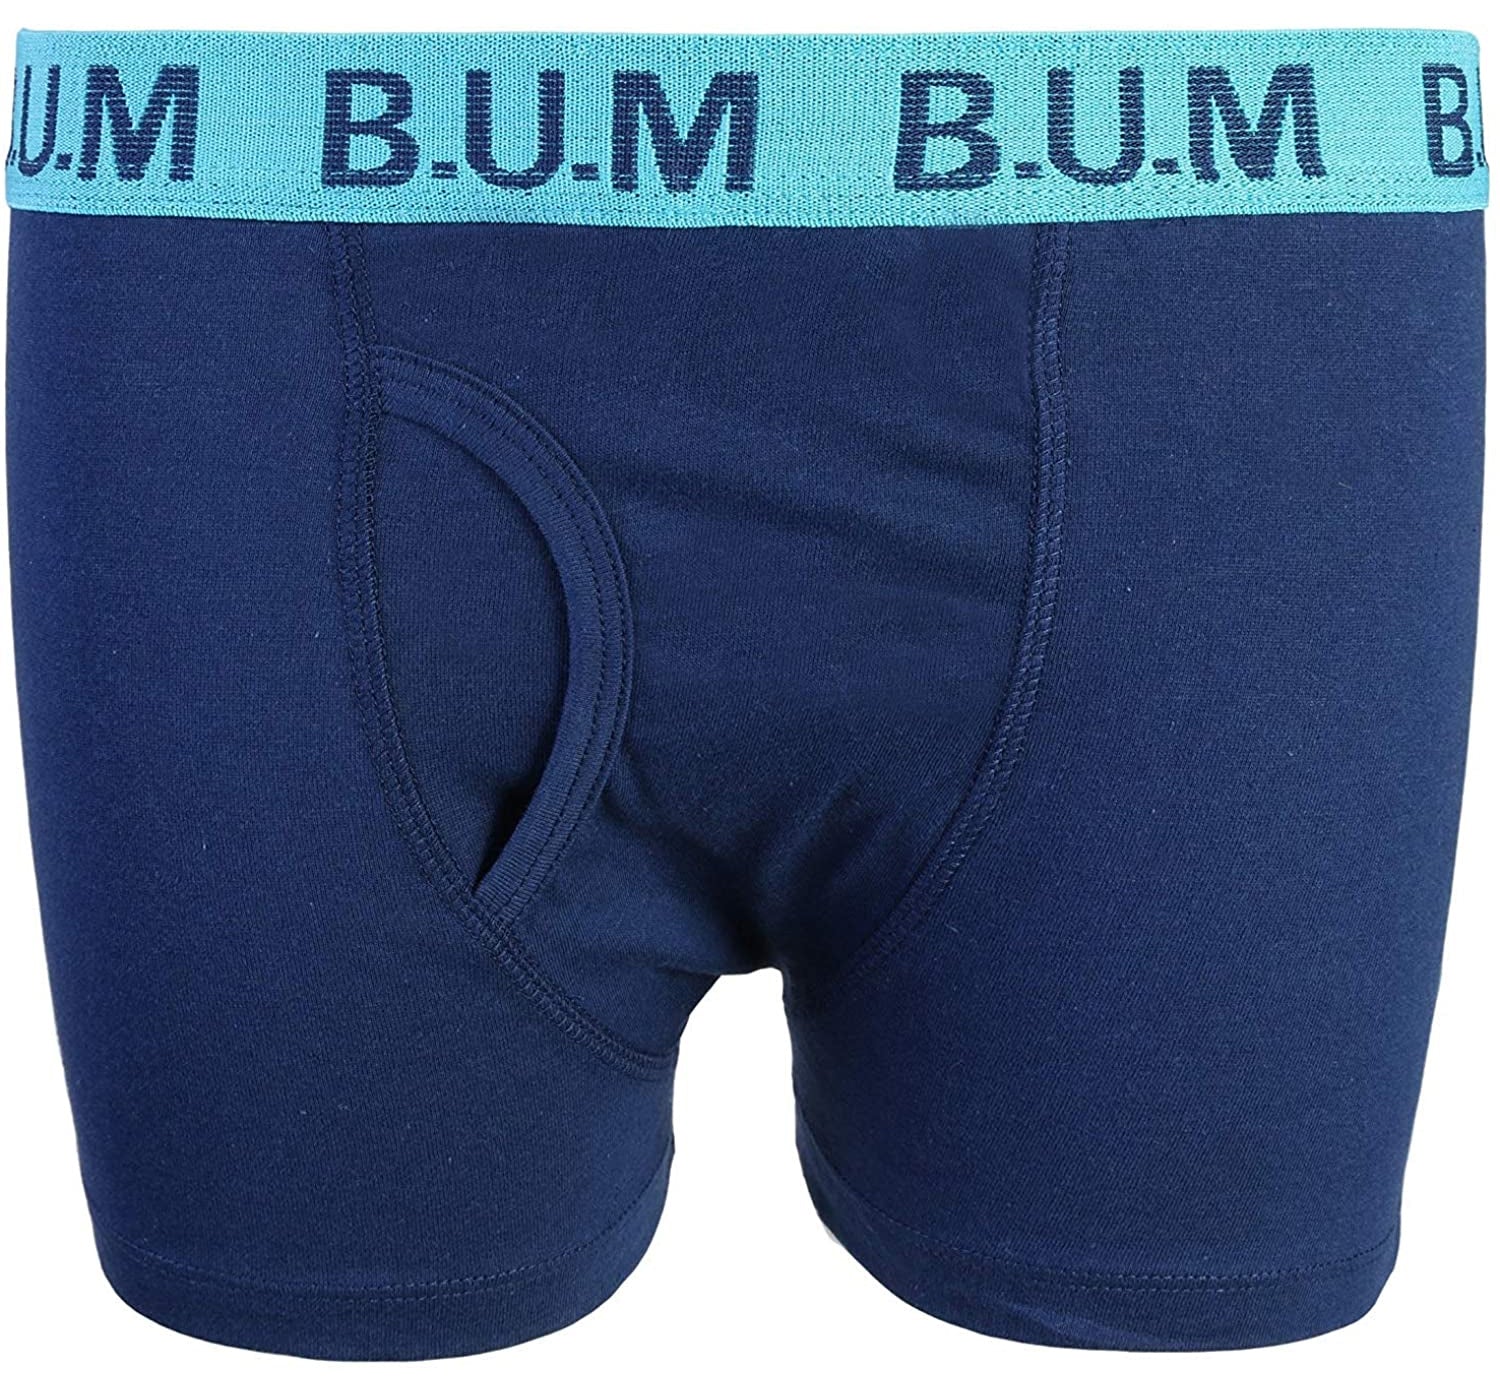 B.U.M. Equipment Boys Underwear - Cotton Boxer Briefs (5 Pack